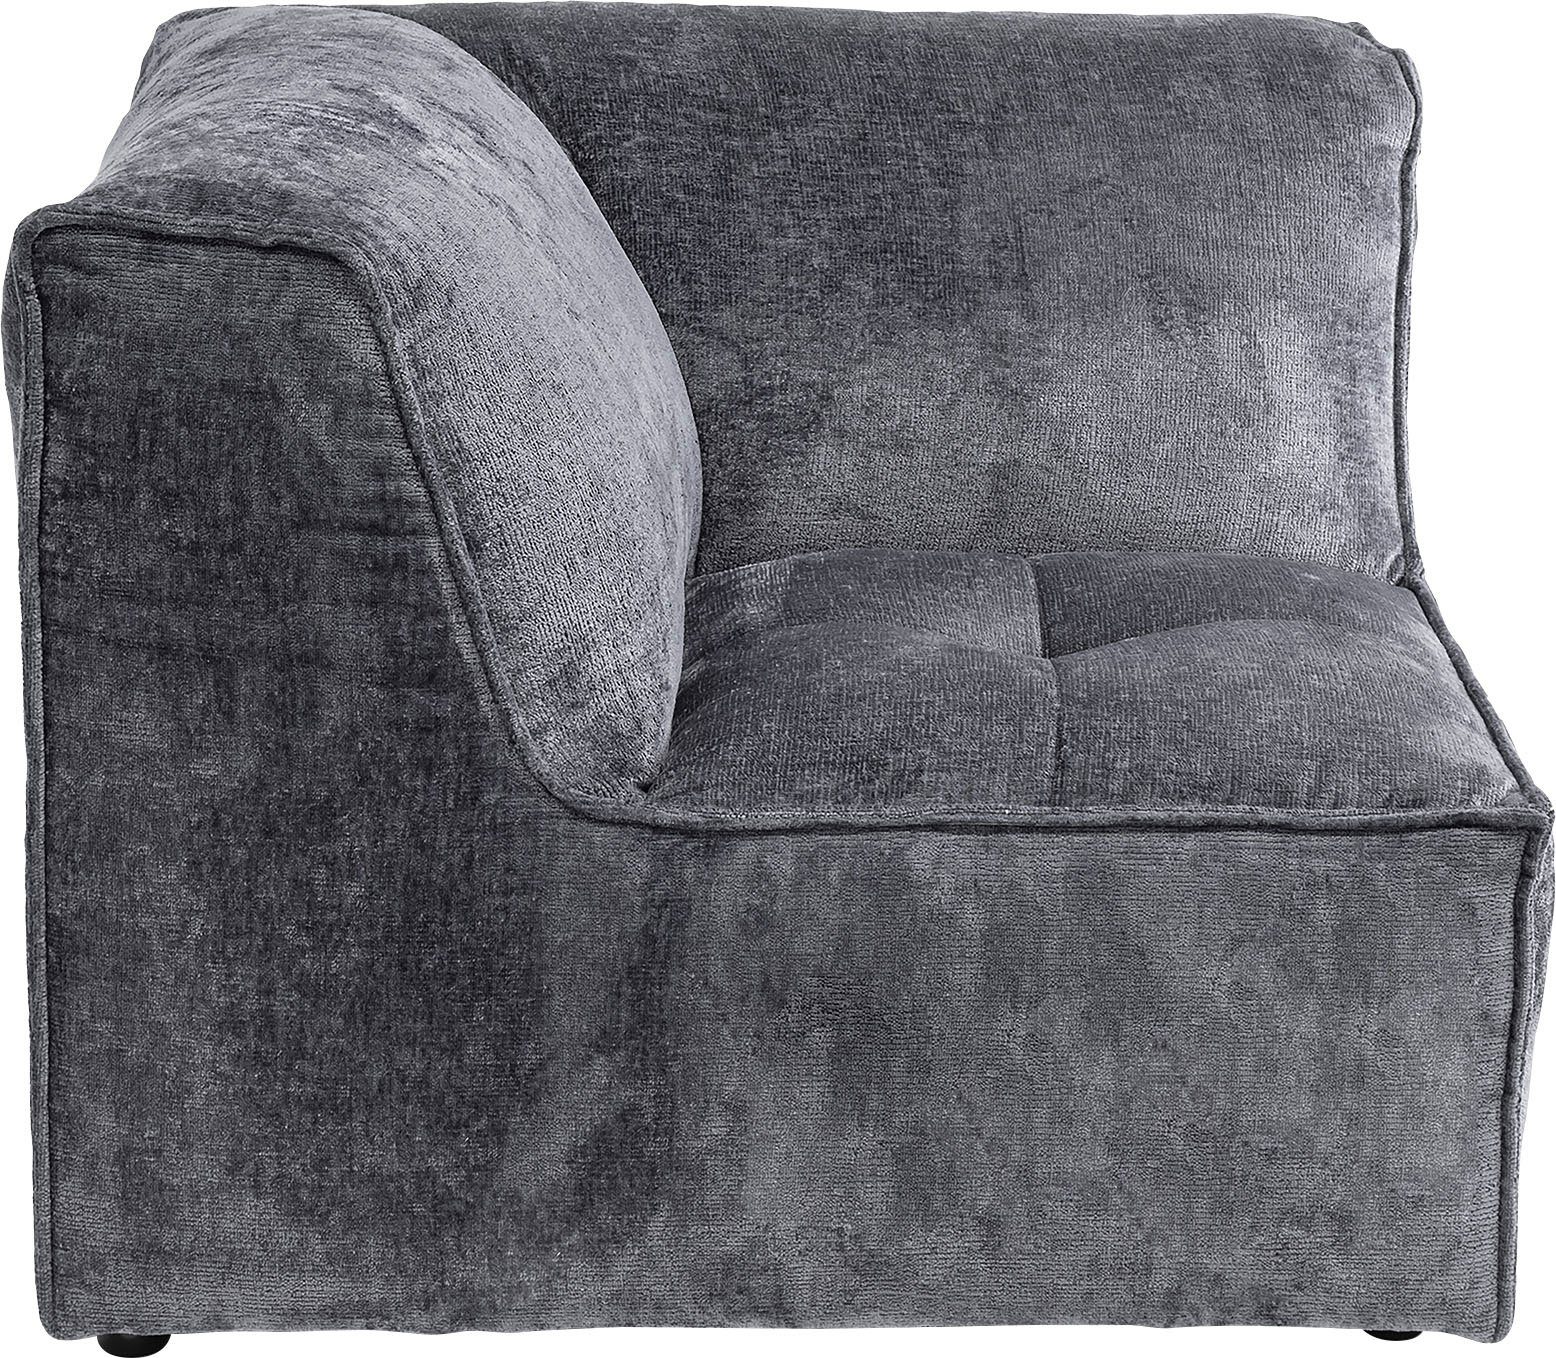 (1 als separat Monolid RAUM.ID verwendbar, für dunkelgrau St), Zusammenstellung individuelle Sofa-Eckelement Modul oder